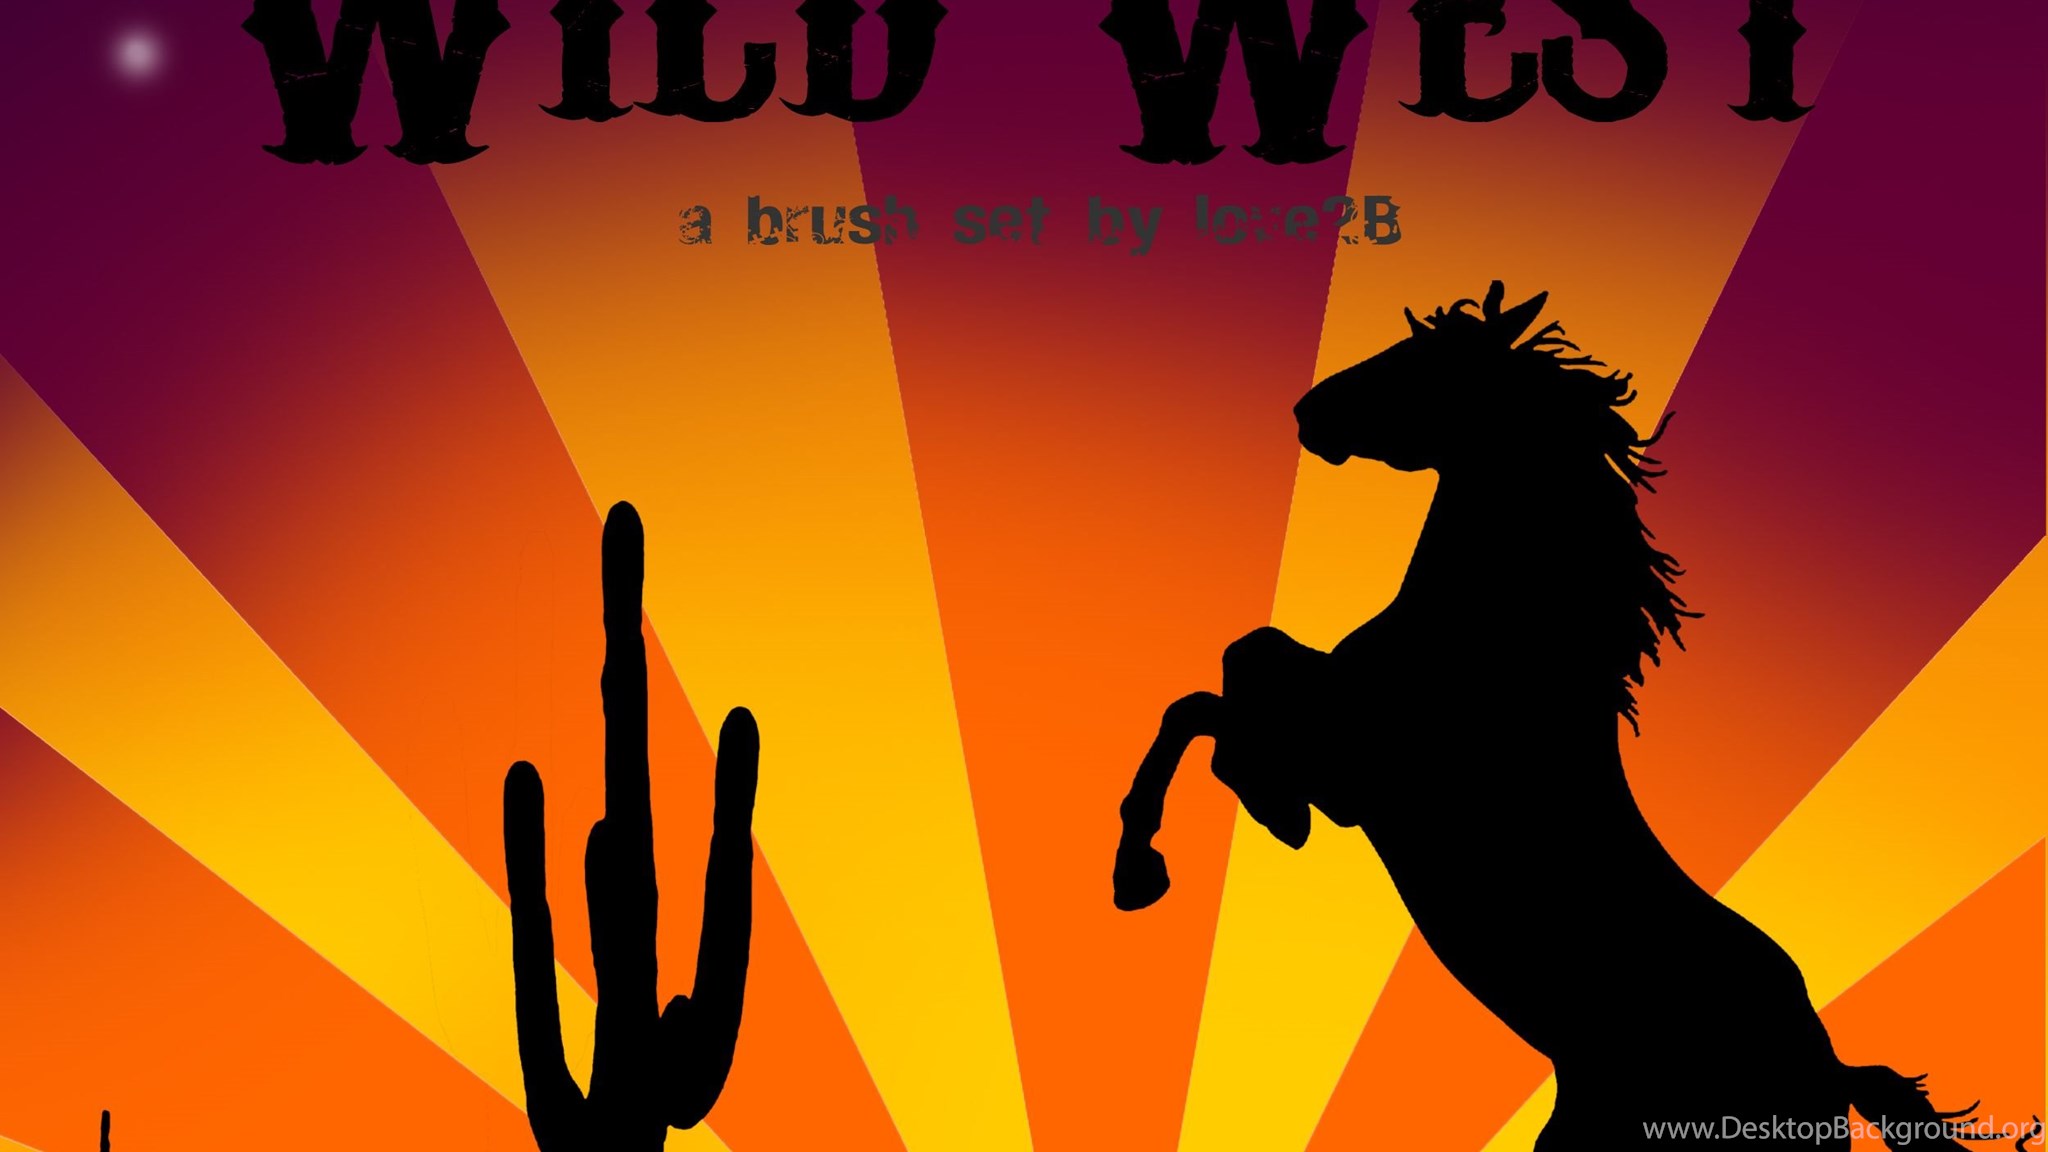 Wild West Brushes By Love2b On Deviantart Desktop Background